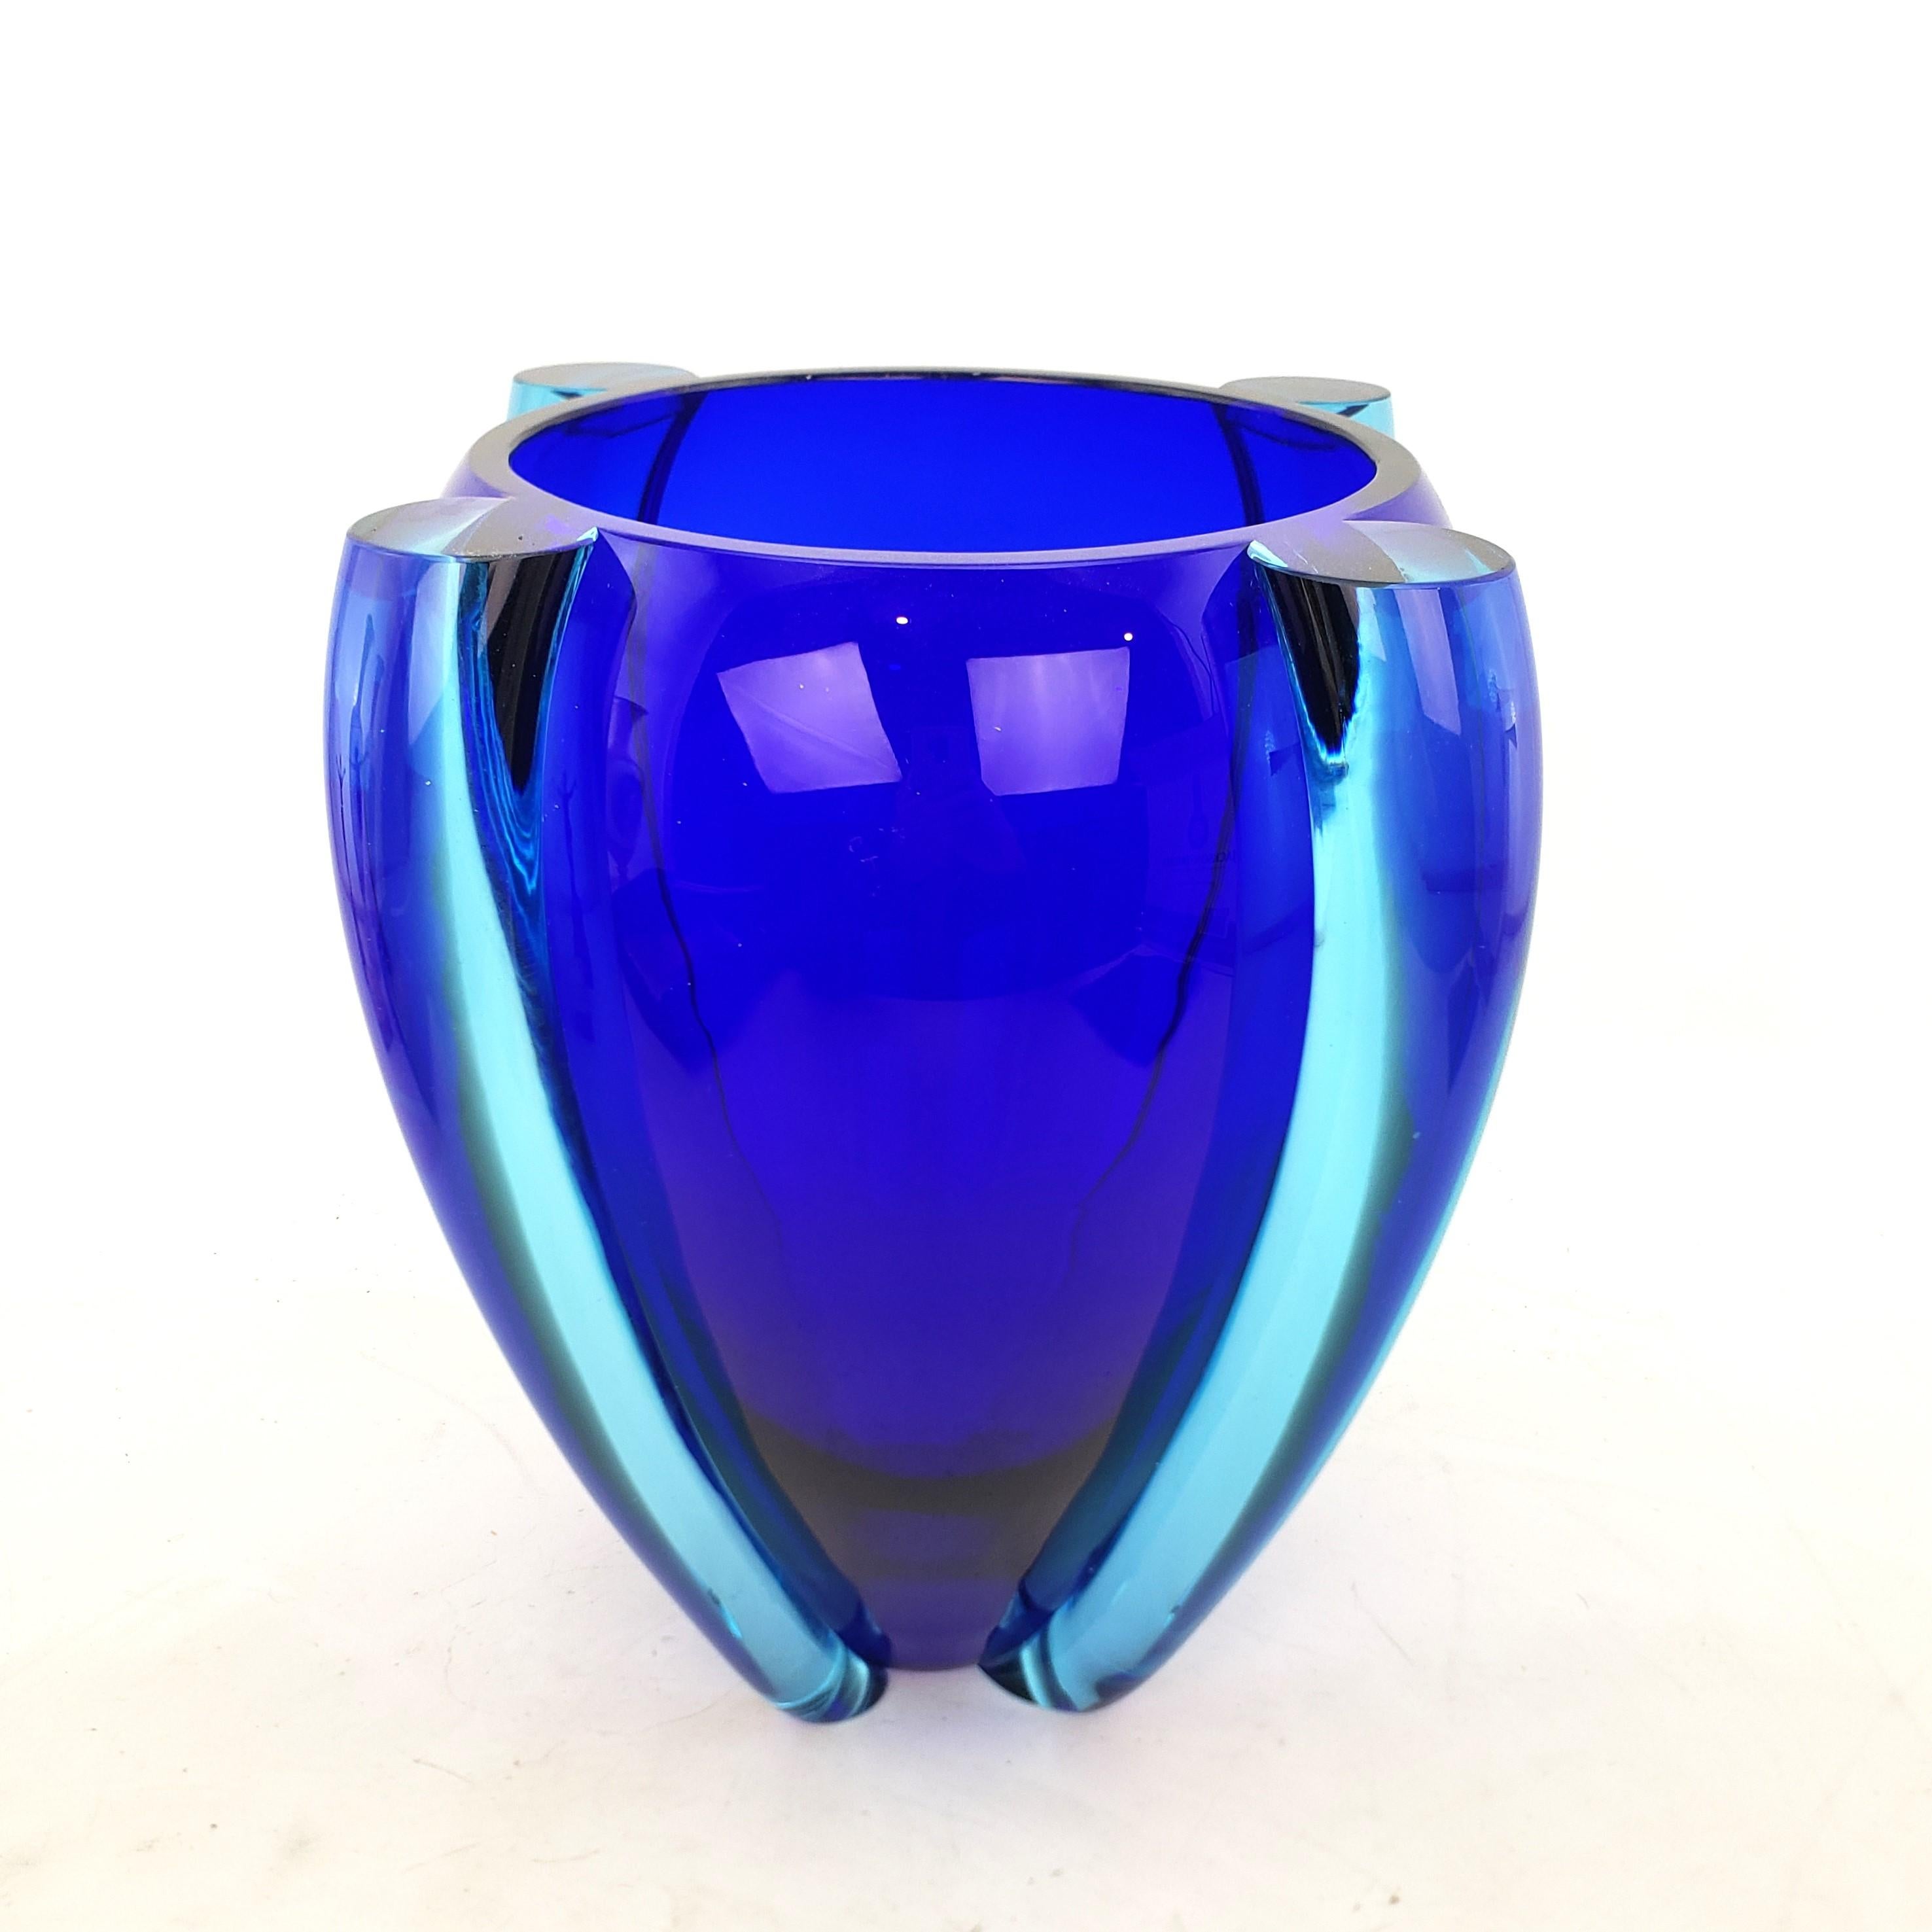 Diese große Vase aus Kunstglas ist von einem unbekannten Künstler signiert,  und vermutlich aus Italien stammend, aus dem Jahr 1989 und im Stil des Mid Century Modern gefertigt. Die Vase besteht aus einem großen kobaltblauen  in der Mitte mit dicken